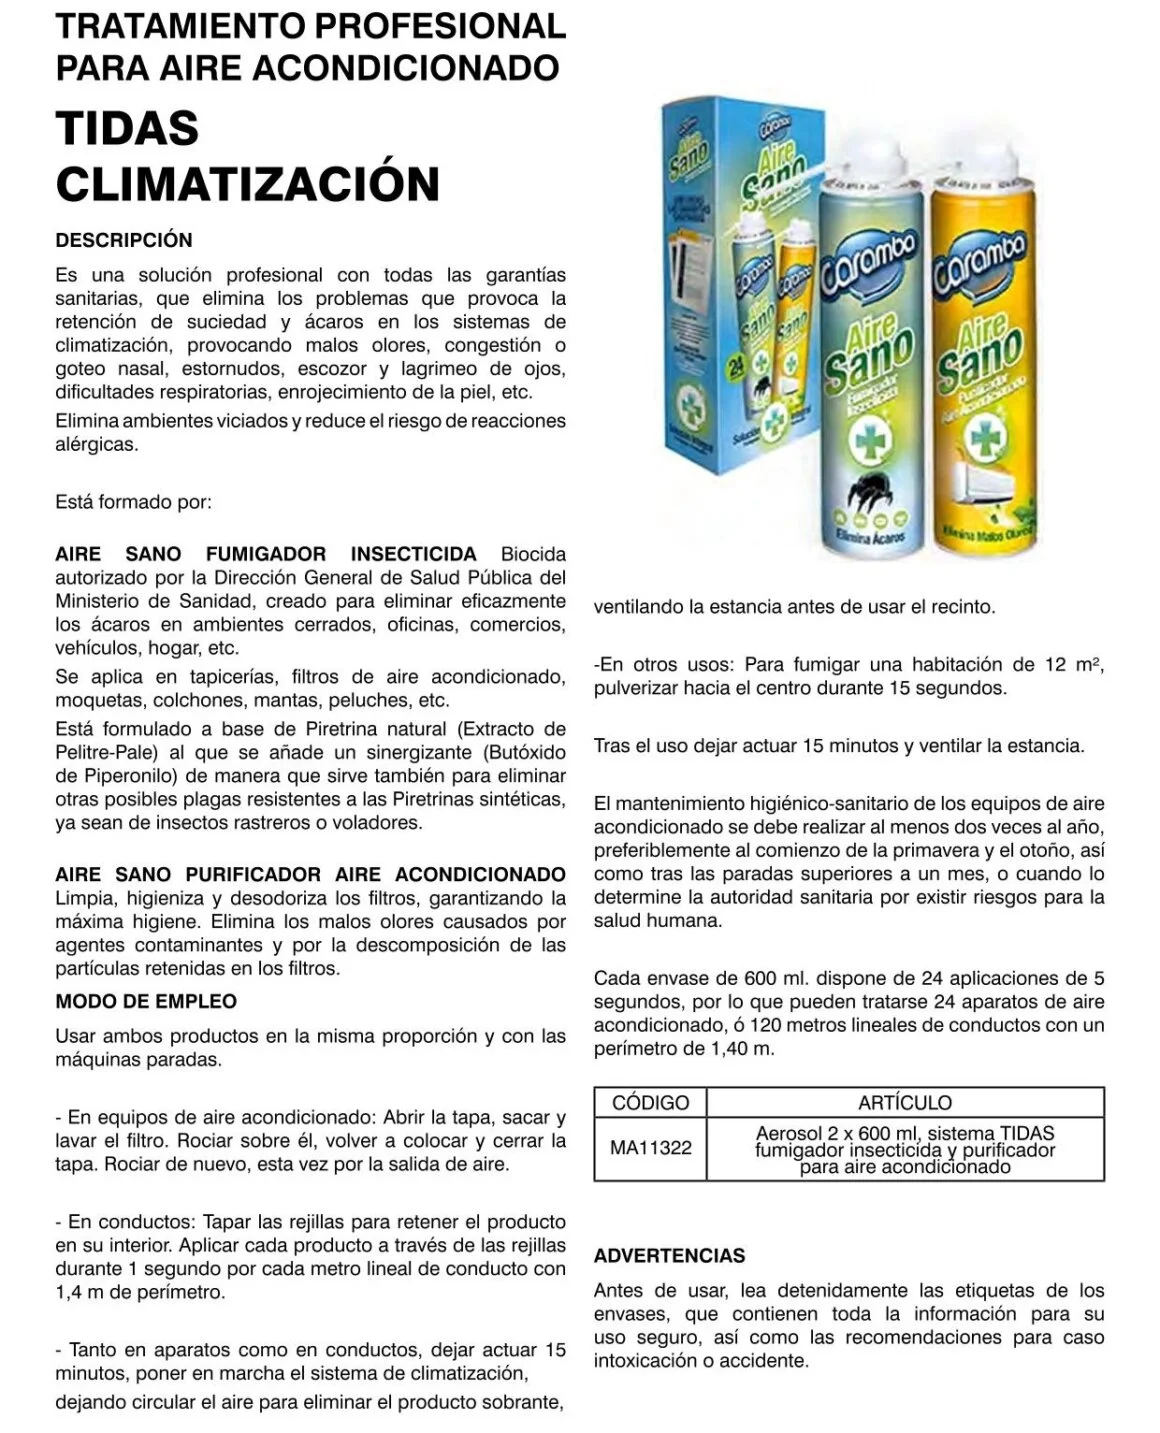 MA11322 CARAMBA CLIMATIZACION